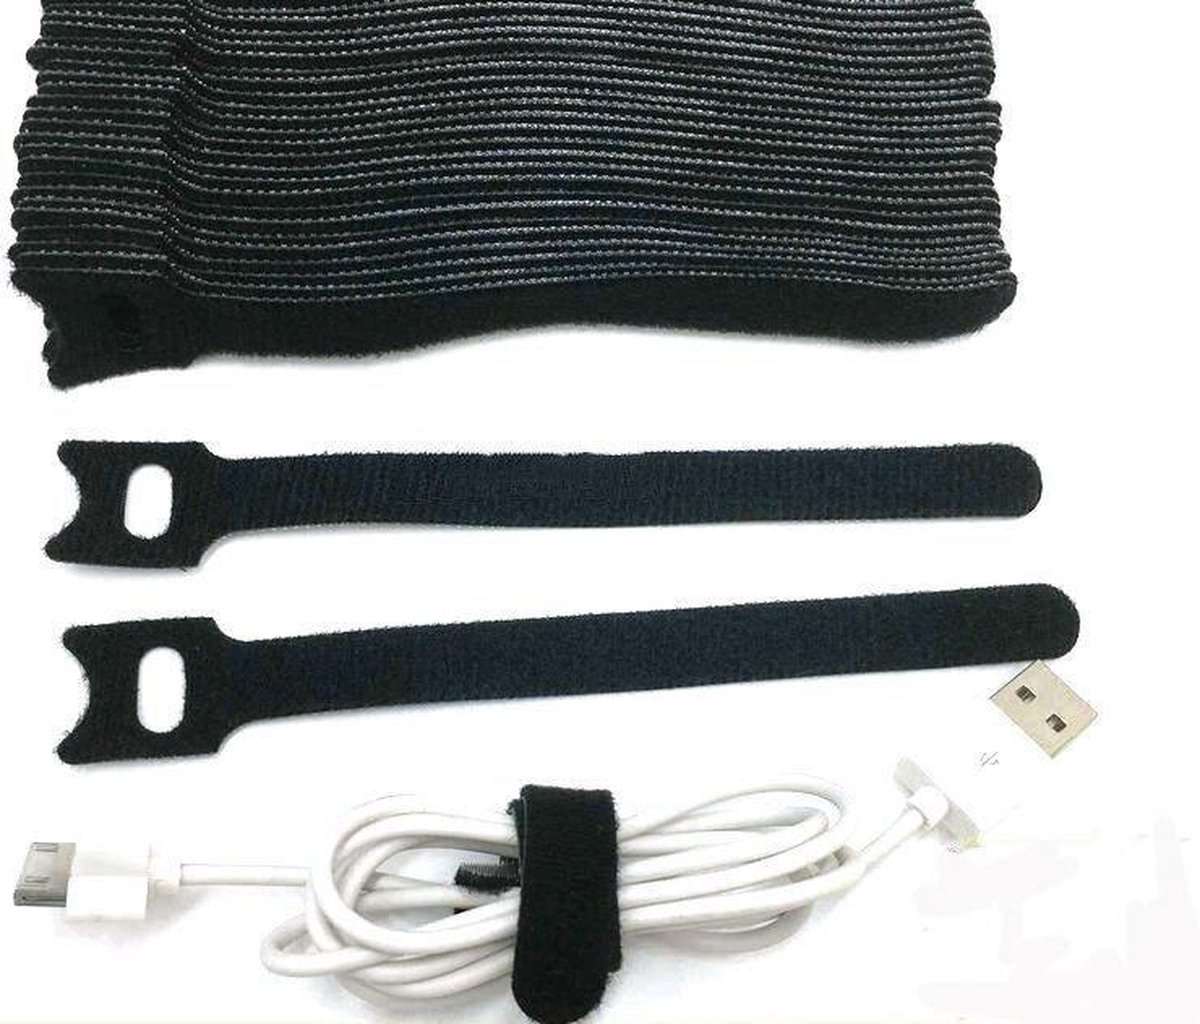 Klittenband kabelbinder-TY RAP-tie rap -20 stuks zwart-12x200 mm-bundelbandje-bindbandje- trekbandje- snelbinder,